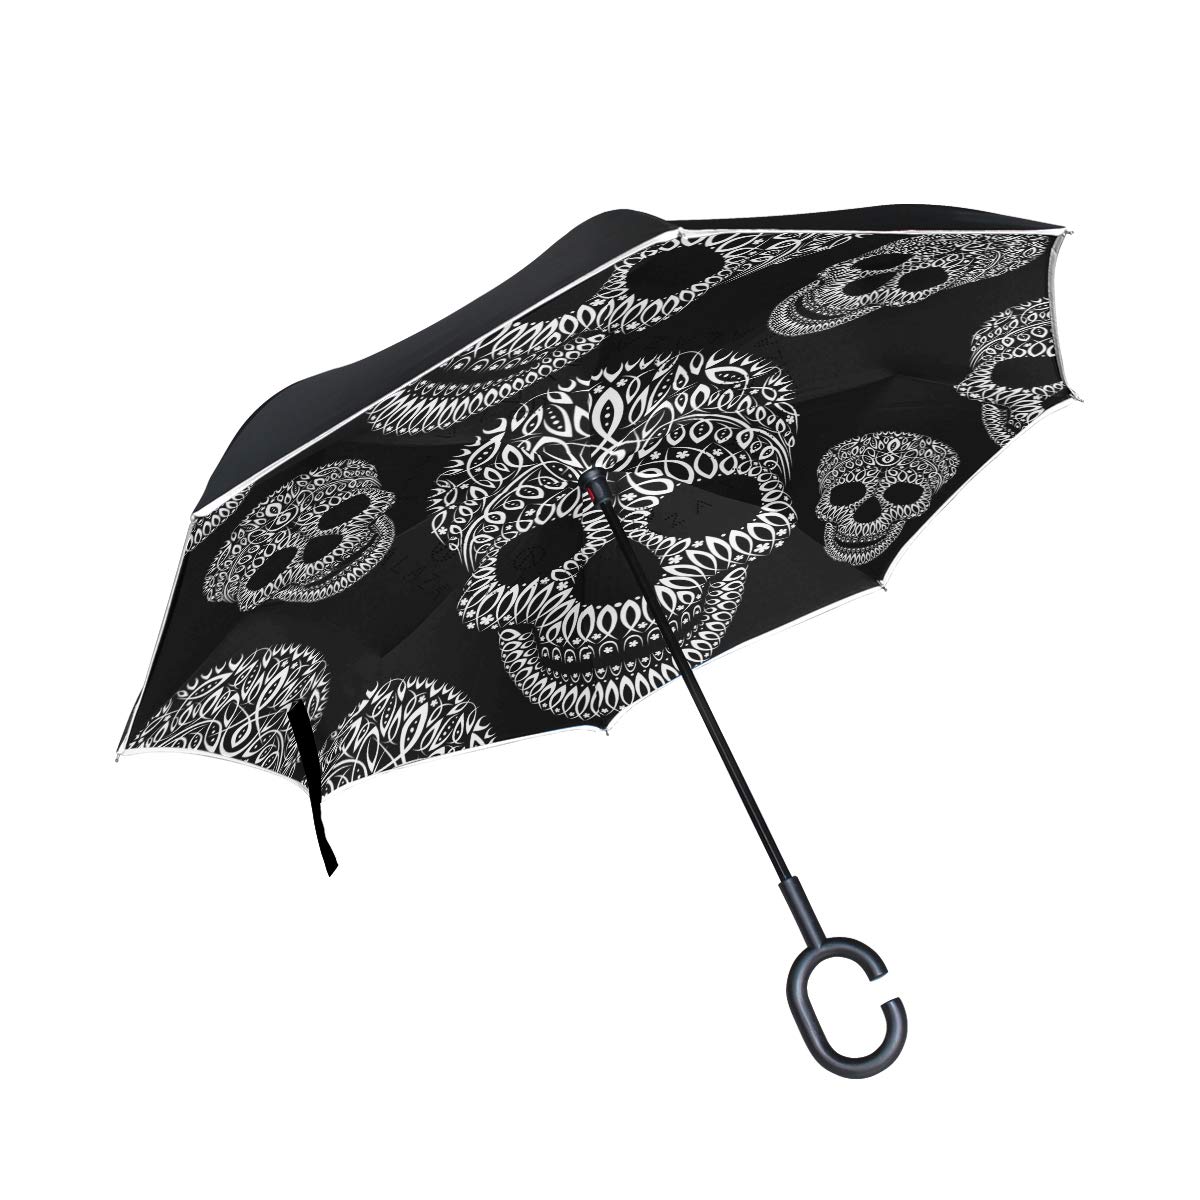 ISAOA Gro?er umgekehrter faltbarer Regenschirm, doppellagig, winddicht, UV-Schutz, Regenschirm, f¨¹r den Au?enbereich, C-f?rmiger Griff, selbststehend, Ornament-Muster, Totenkopf-Regenschirm